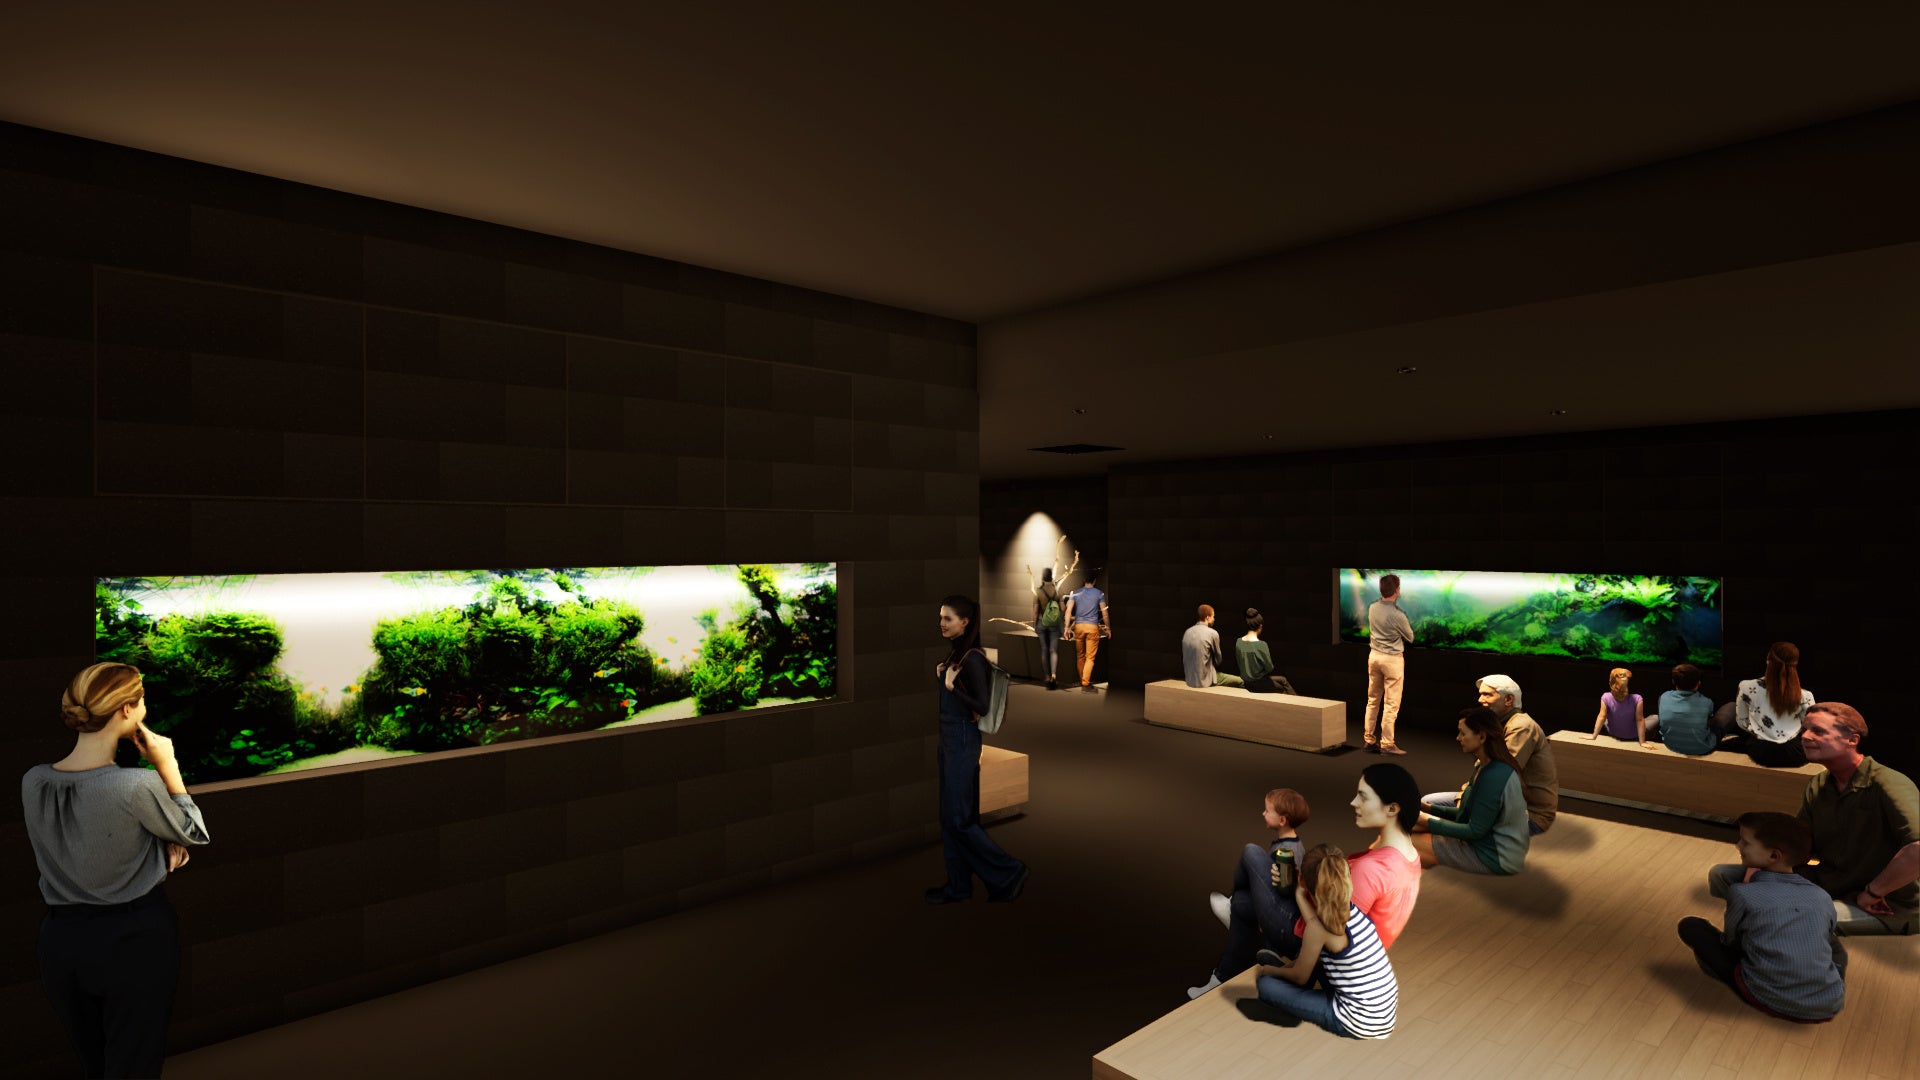 都市型水族館「AOAO SAPPORO」、展示について第1弾を発表「ネイチャーアクアリウム」の展示導入を決定